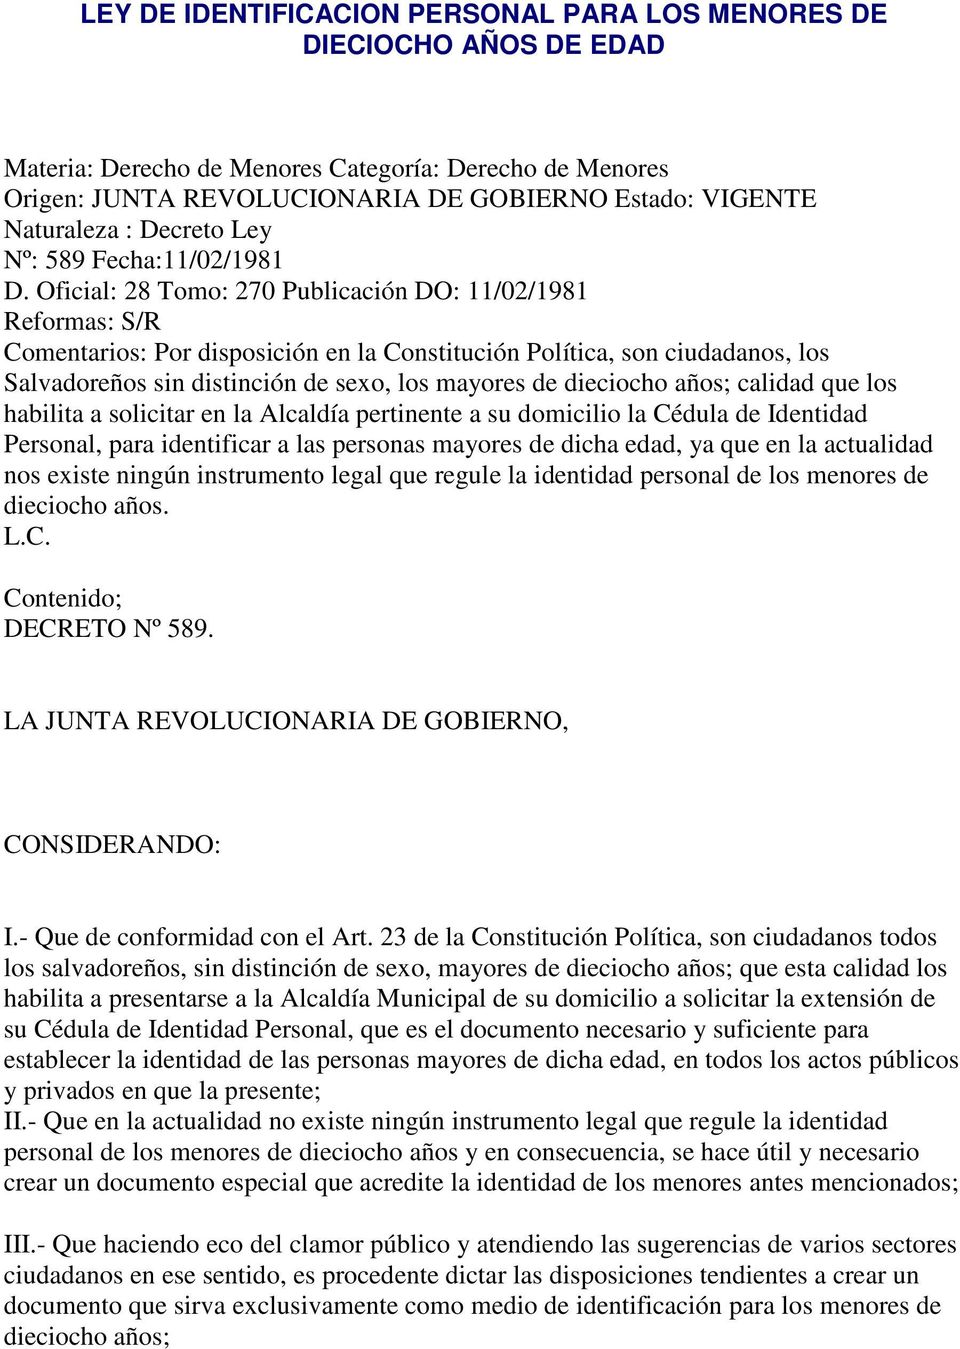 Oficial: 28 Tomo: 270 Publicación DO: 11/02/1981 Reformas: S/R Comentarios: Por disposición en la Constitución Política, son ciudadanos, los Salvadoreños sin distinción de sexo, los mayores de